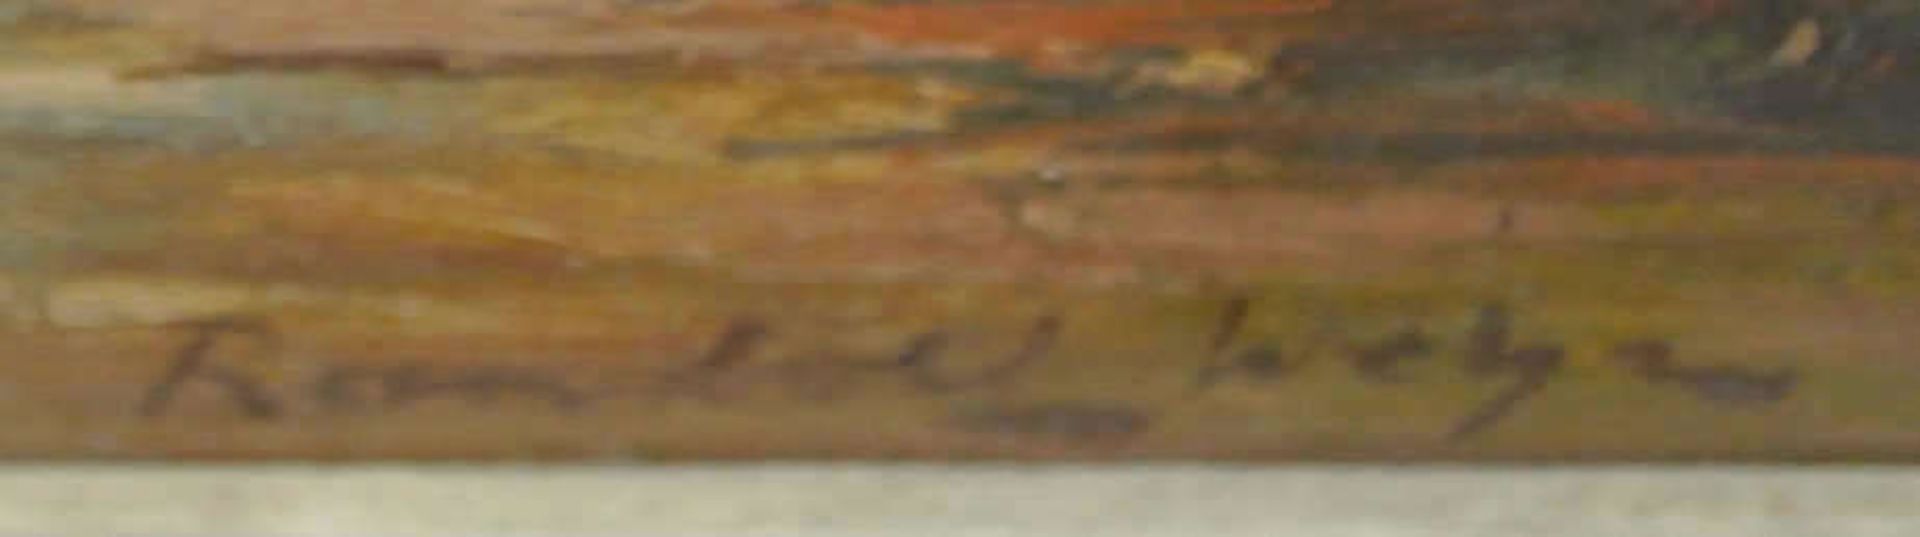 Reinhold Weher, Ölgemälde auf Leinwand, "altes Dörfchen im Herbst am Fluß", rechts unten signiert - Bild 3 aus 3